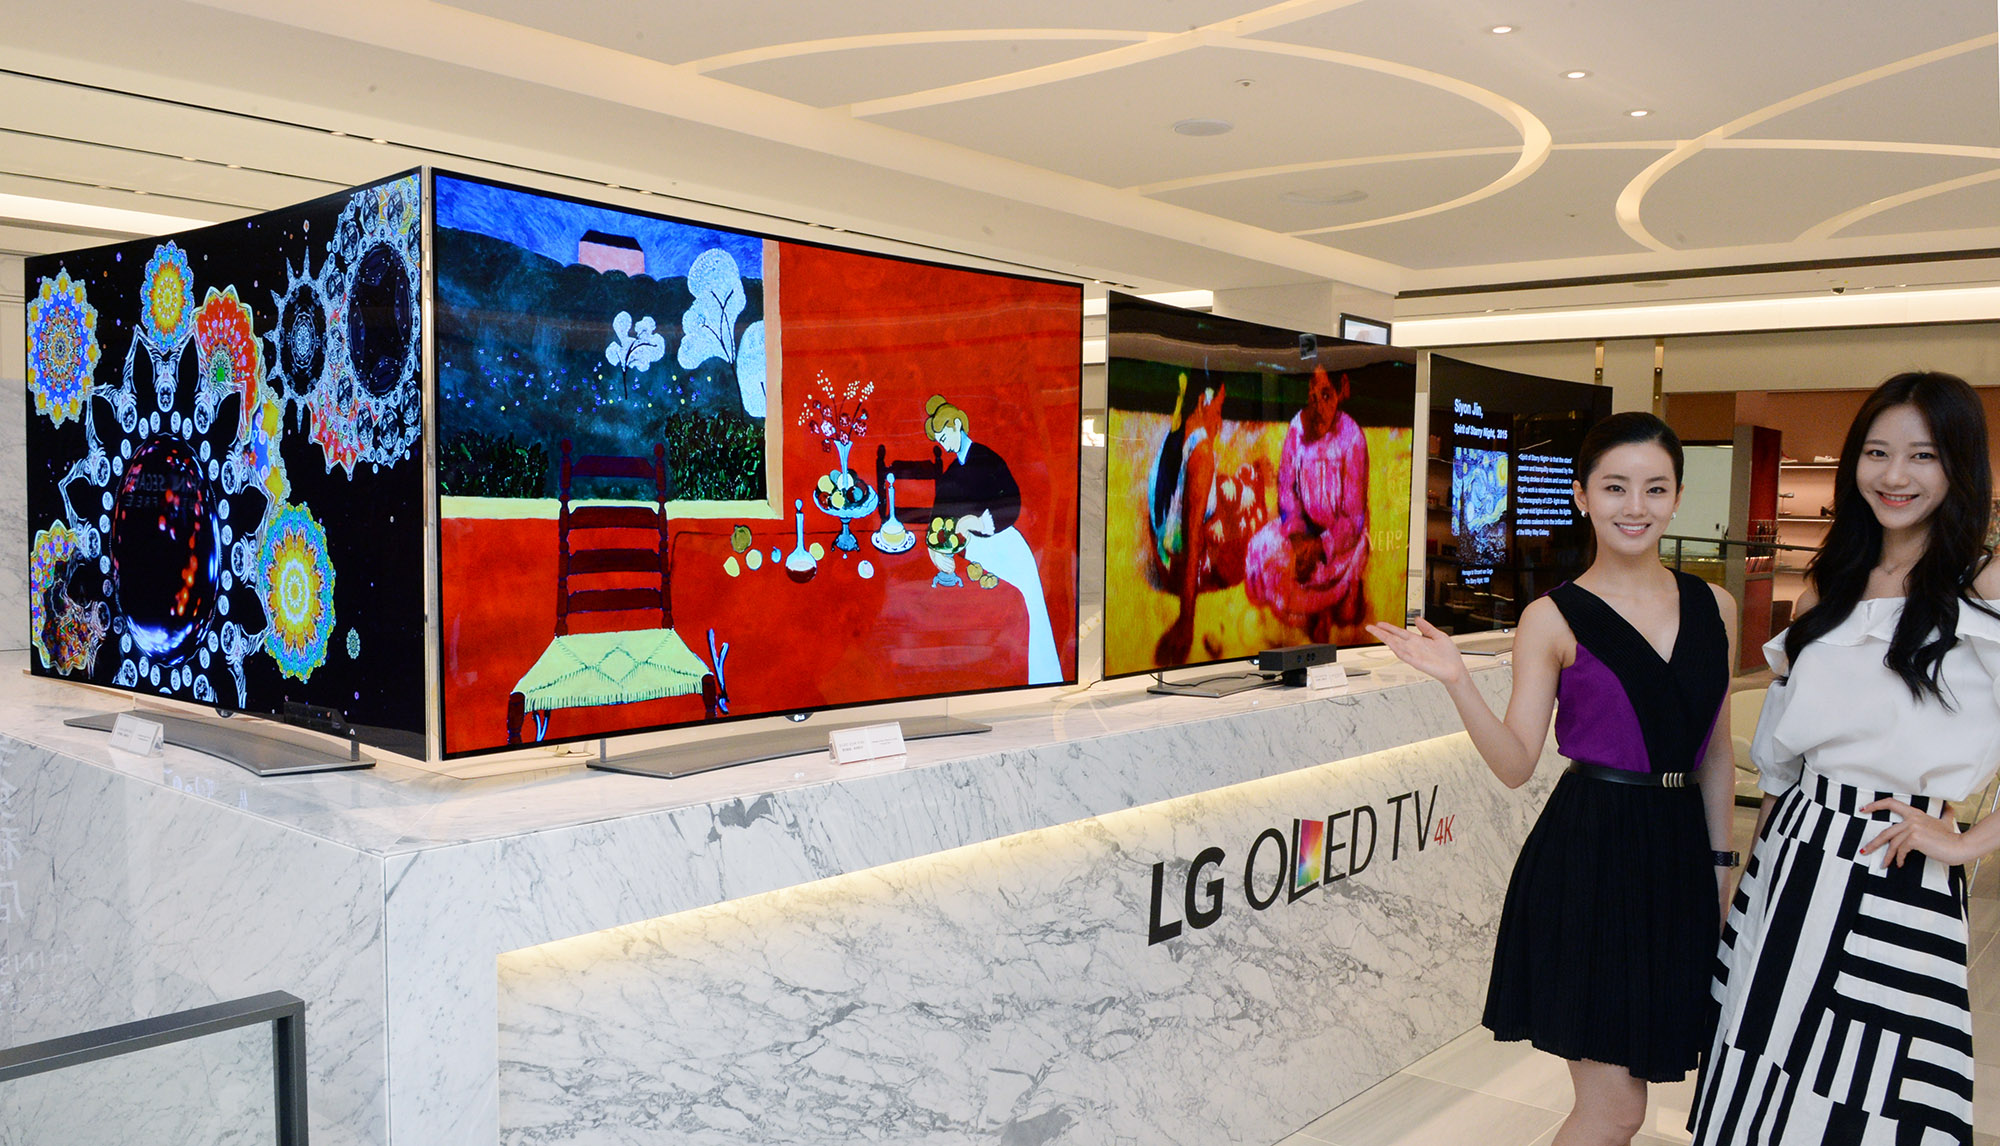 LG 올레드 TV, 면세점 찾는 유커(游客) 사로잡는다